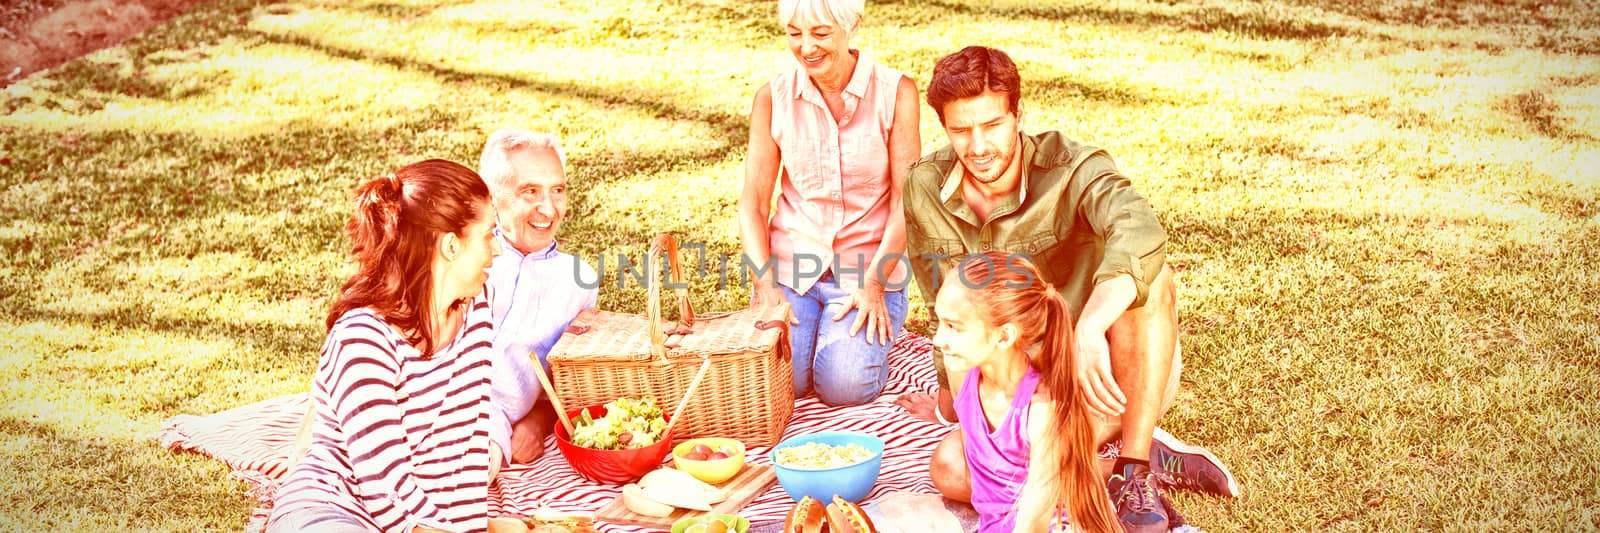 Happy family having picnic in the park by Wavebreakmedia